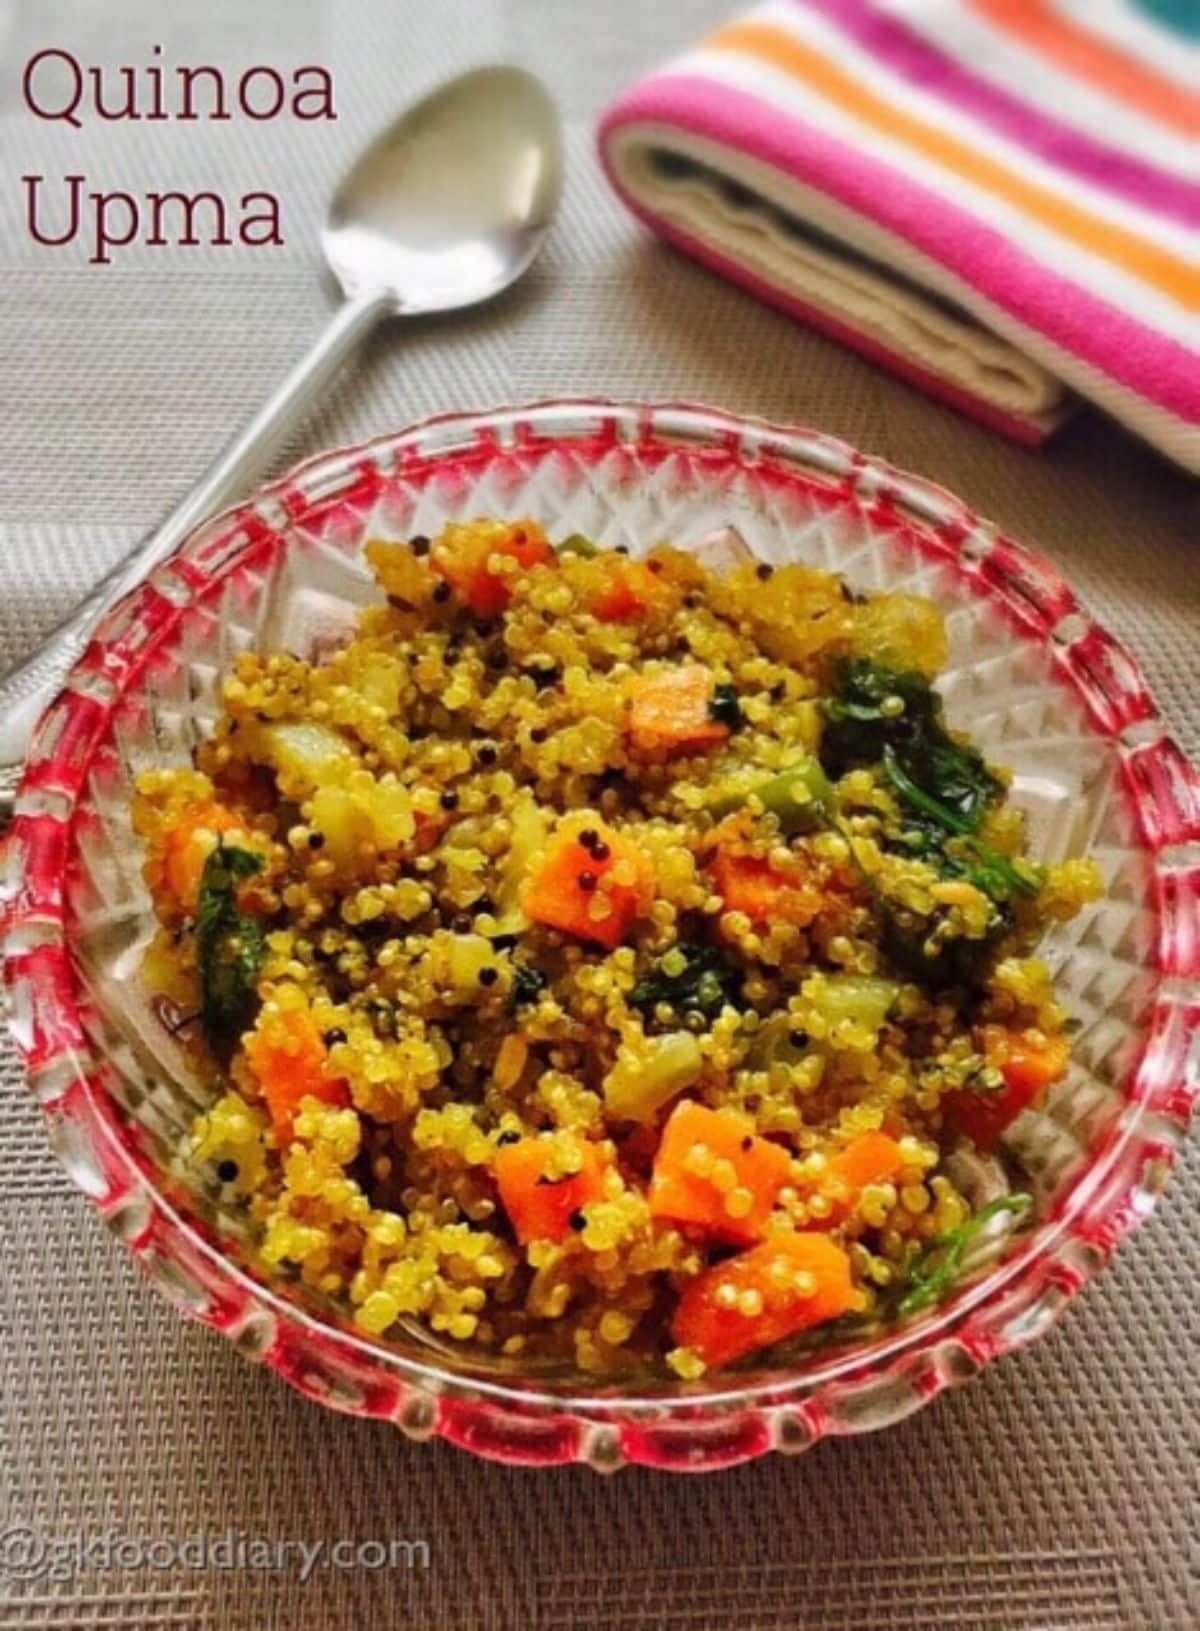 Healthy quinoa upma in a glass bowl.